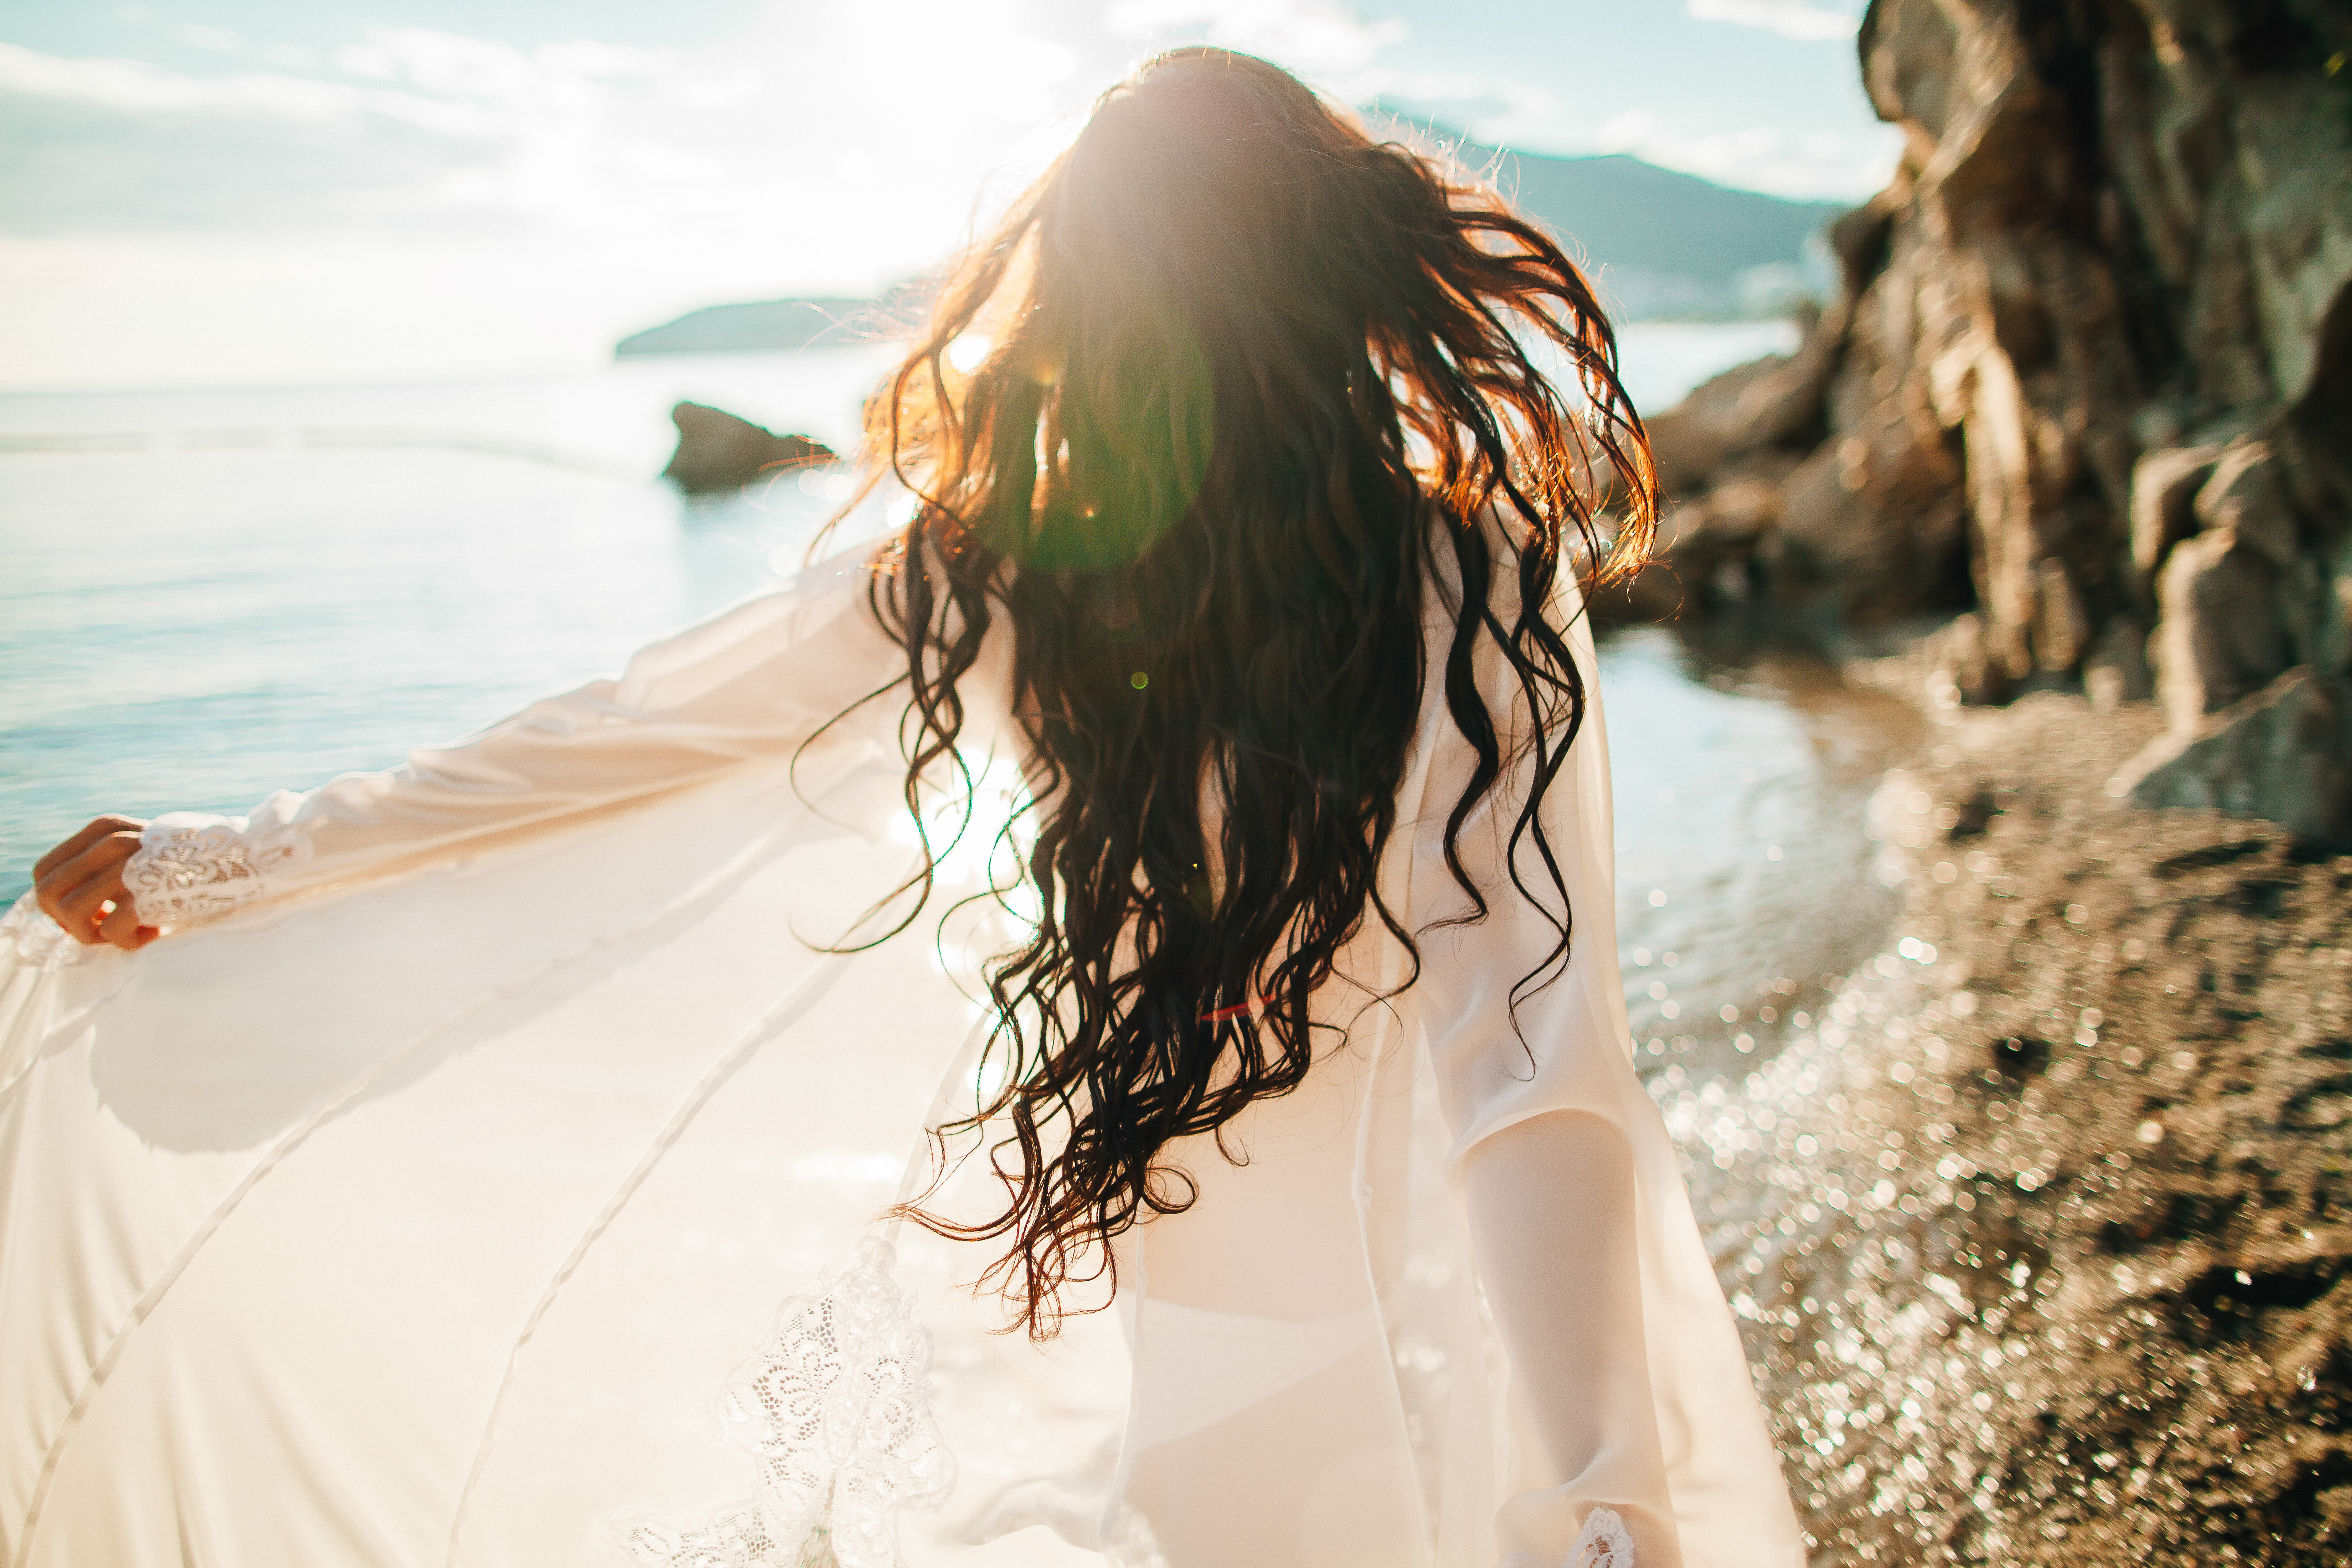 Кудри ветер. Девушка с длинными волосами на море. Девушка на берегу моря. Фотосессия на море. Развивающиеся волосы.